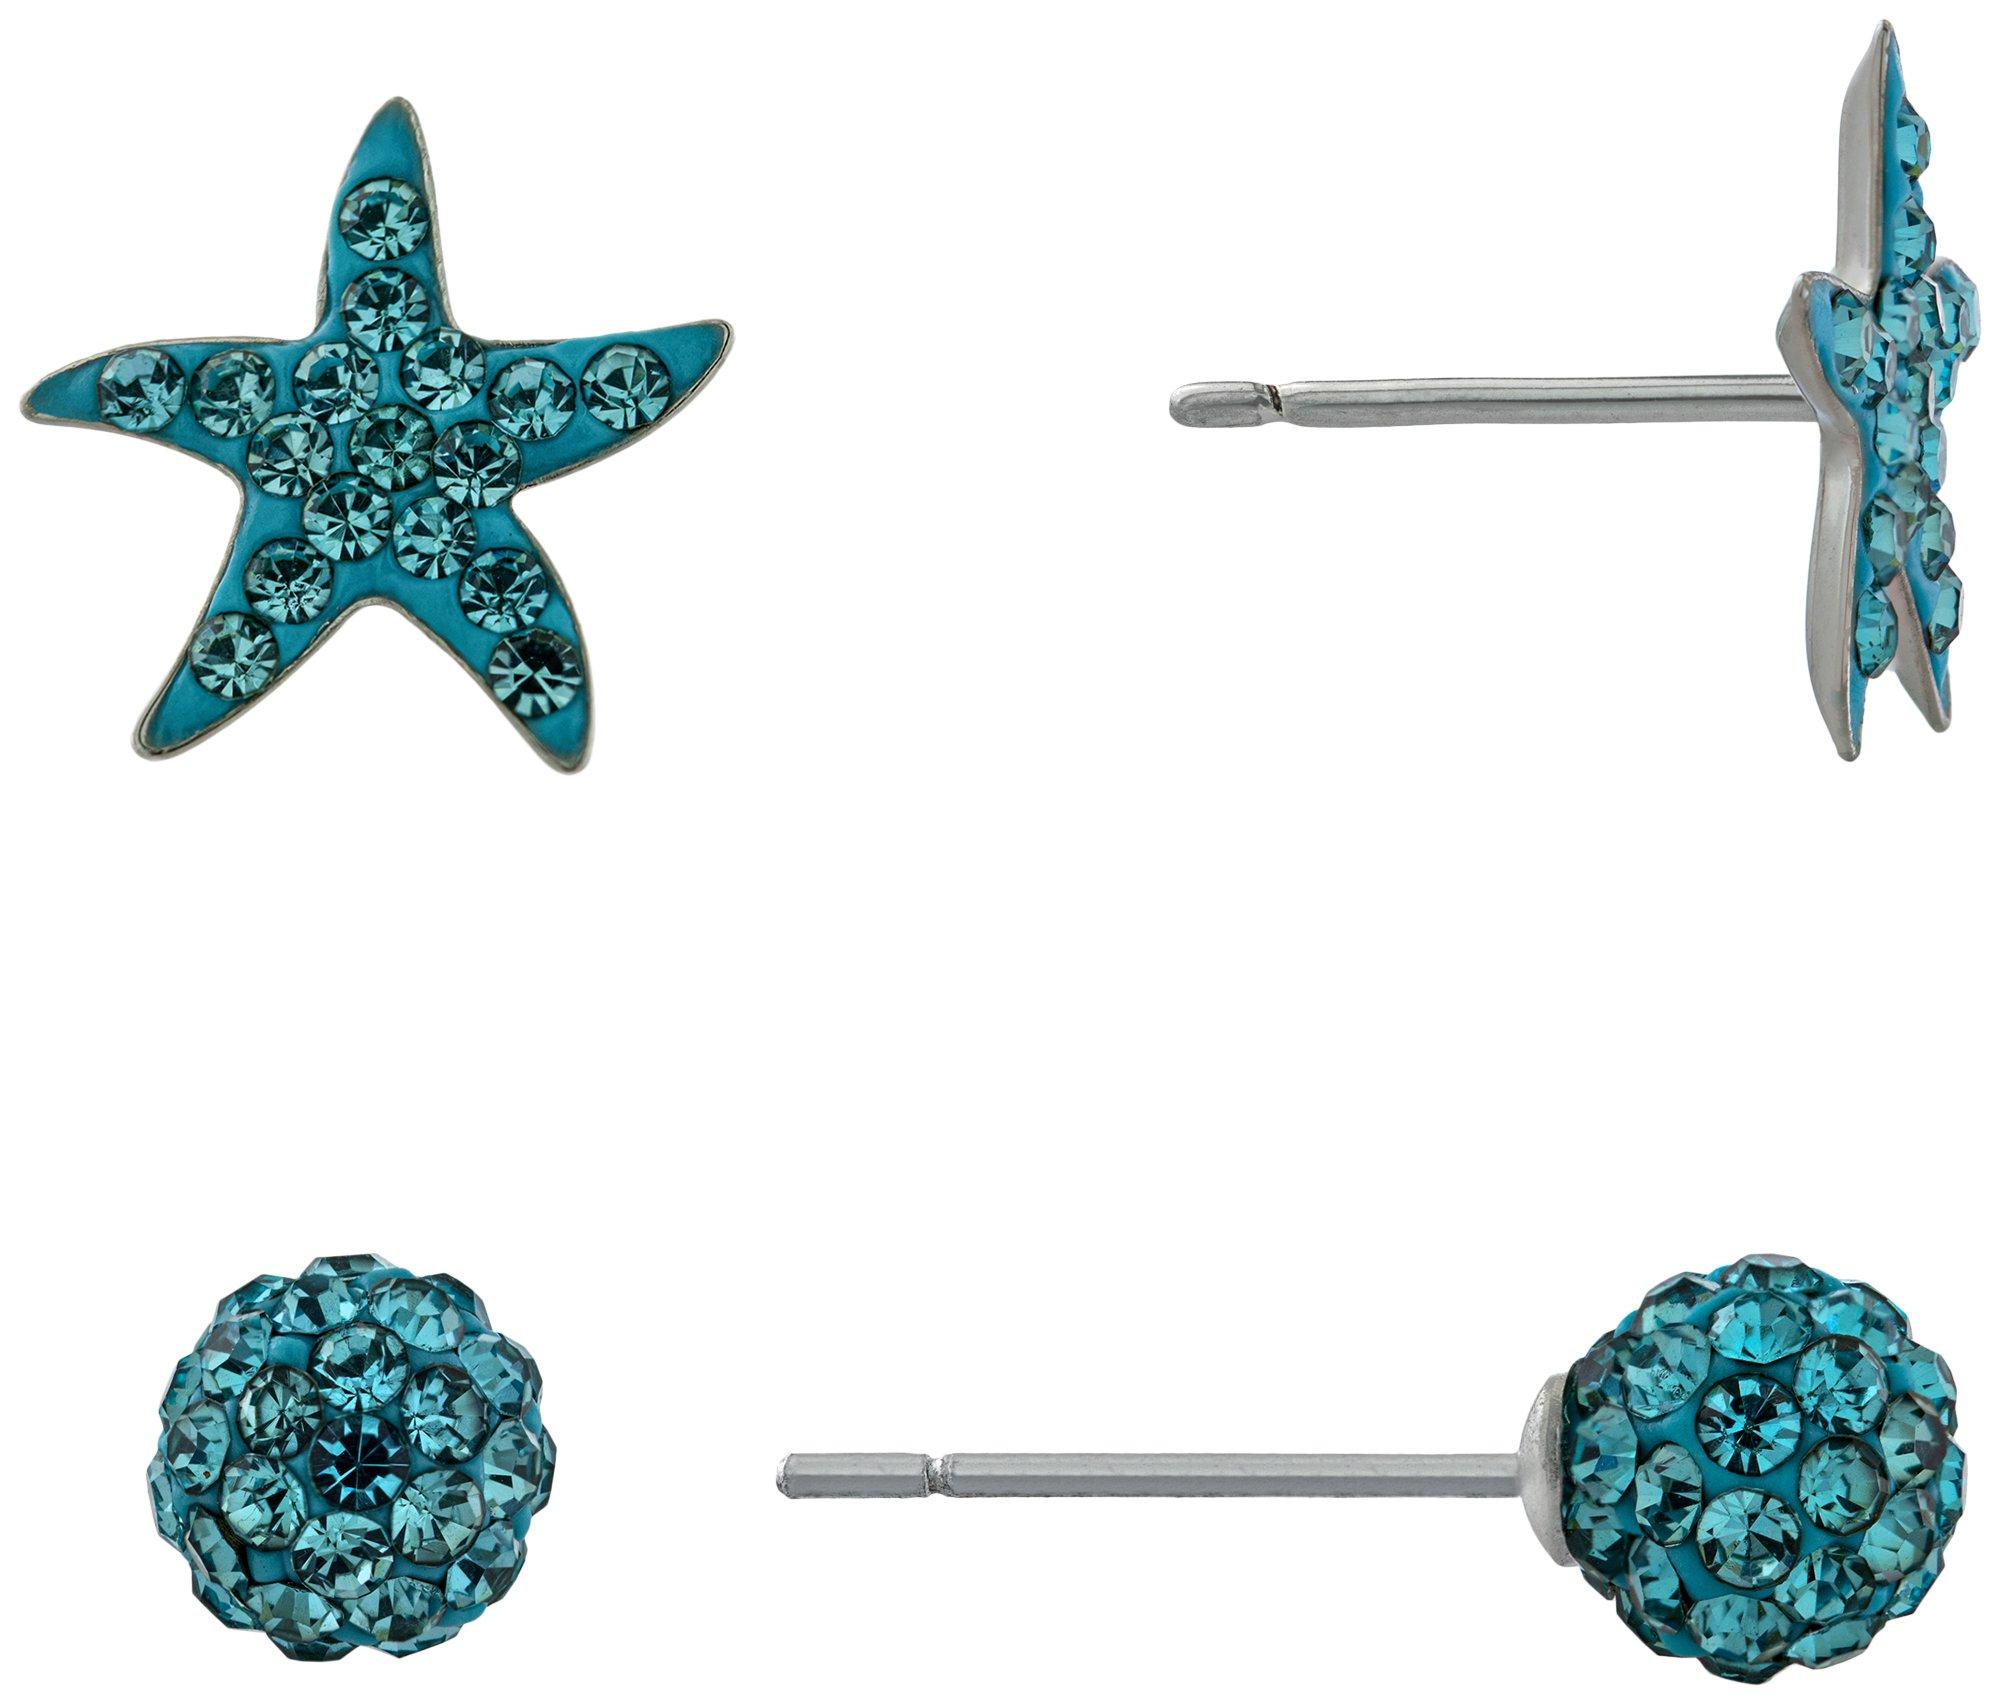 Rhinestone Starfish Sphere Earrings